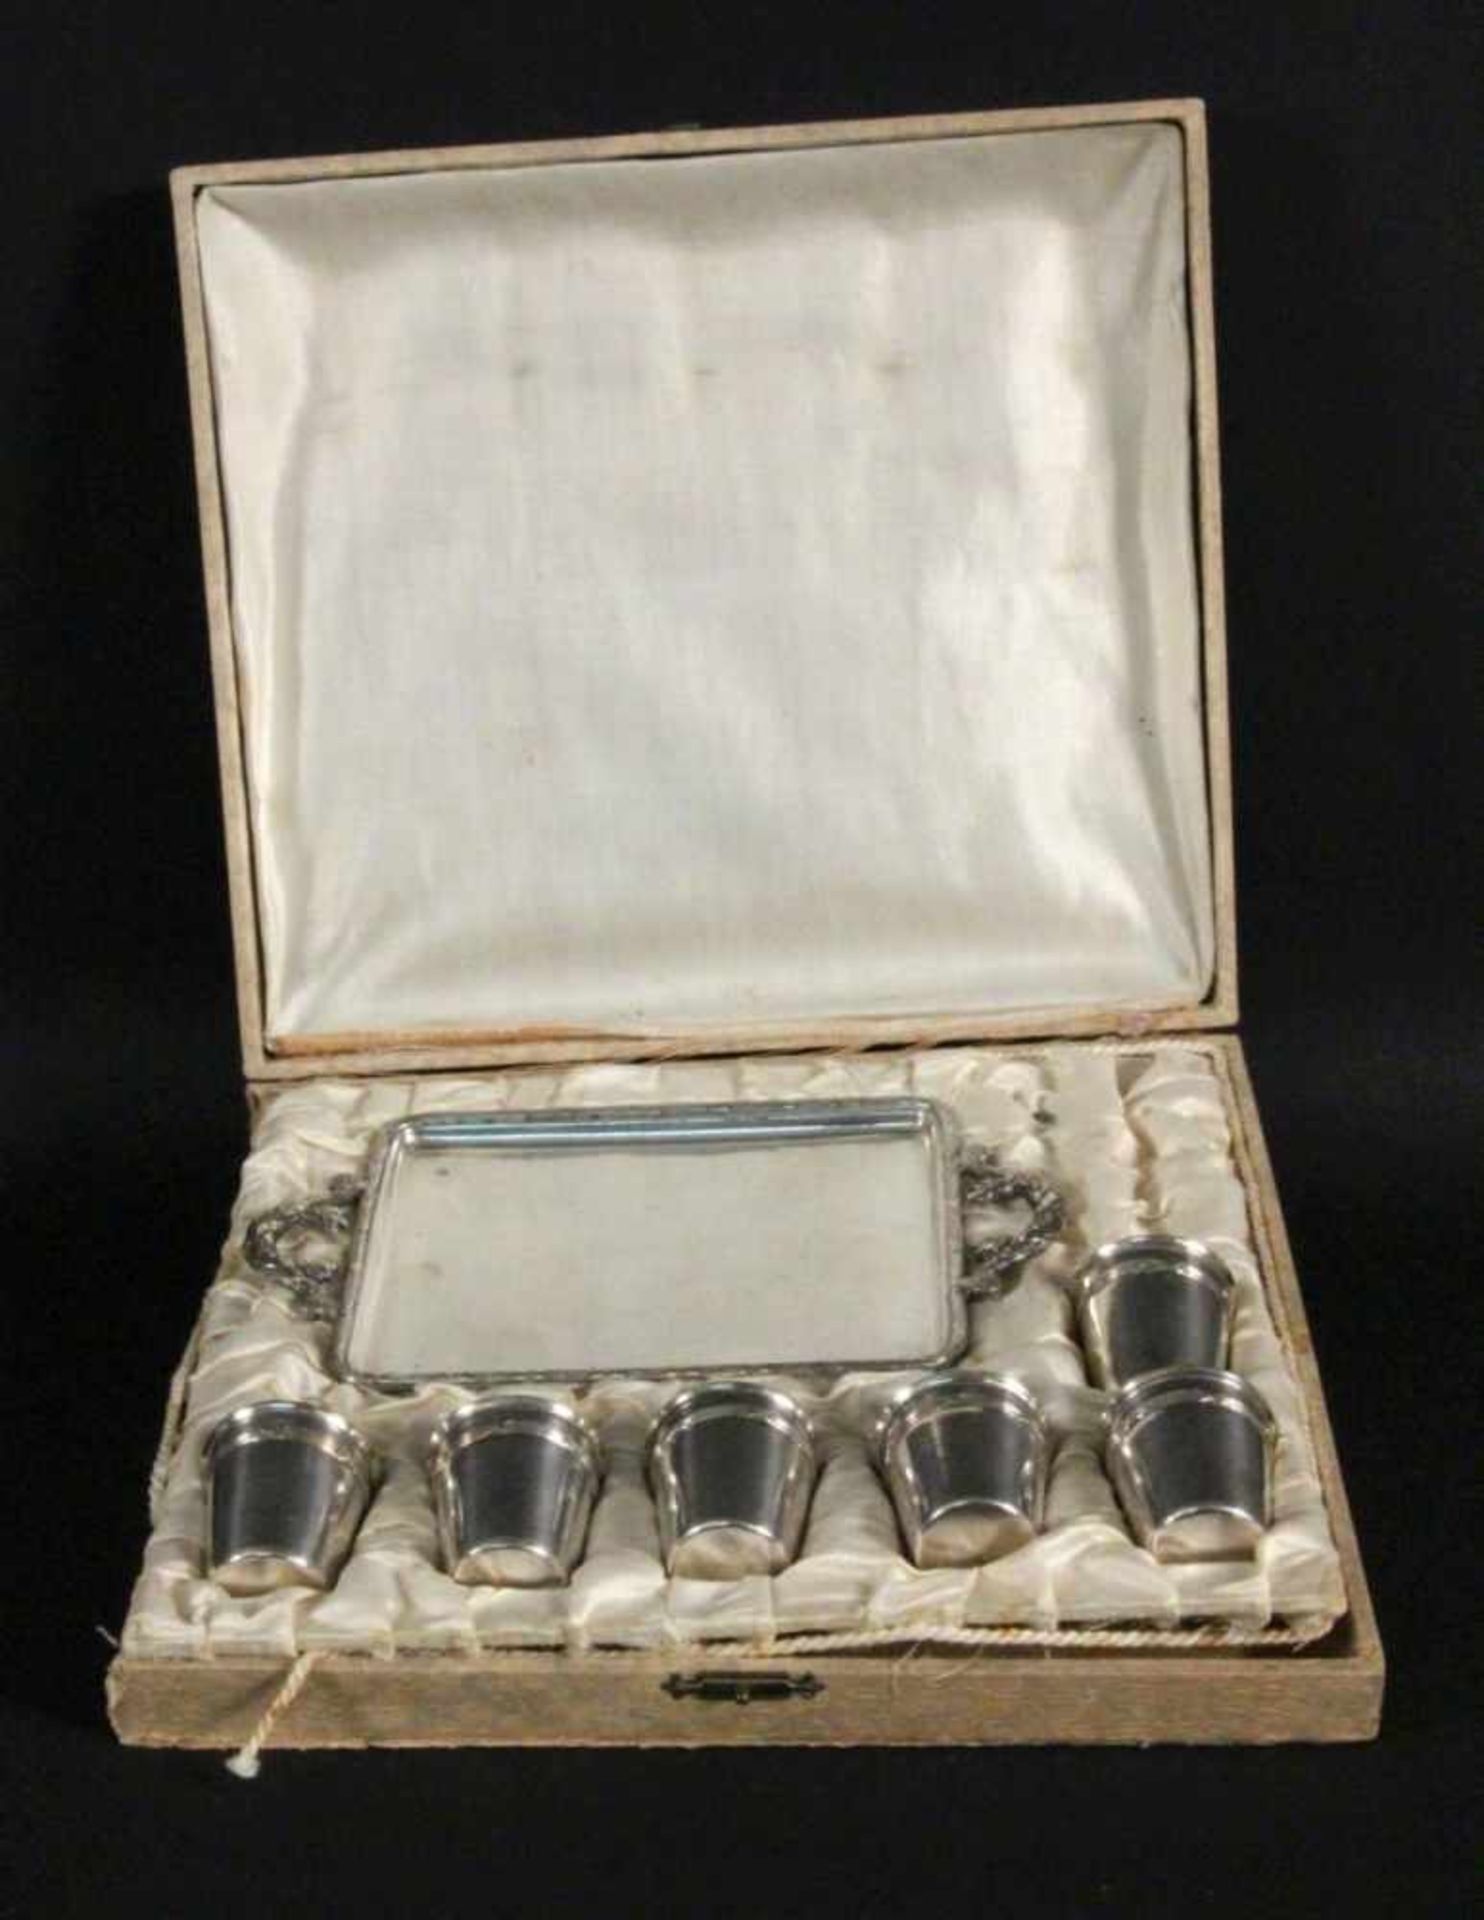 SCHNAPSSERVICE Frankreich um 1900 Tablett mit 6 Bechern. Versilbertes Metall, im Originaletui.